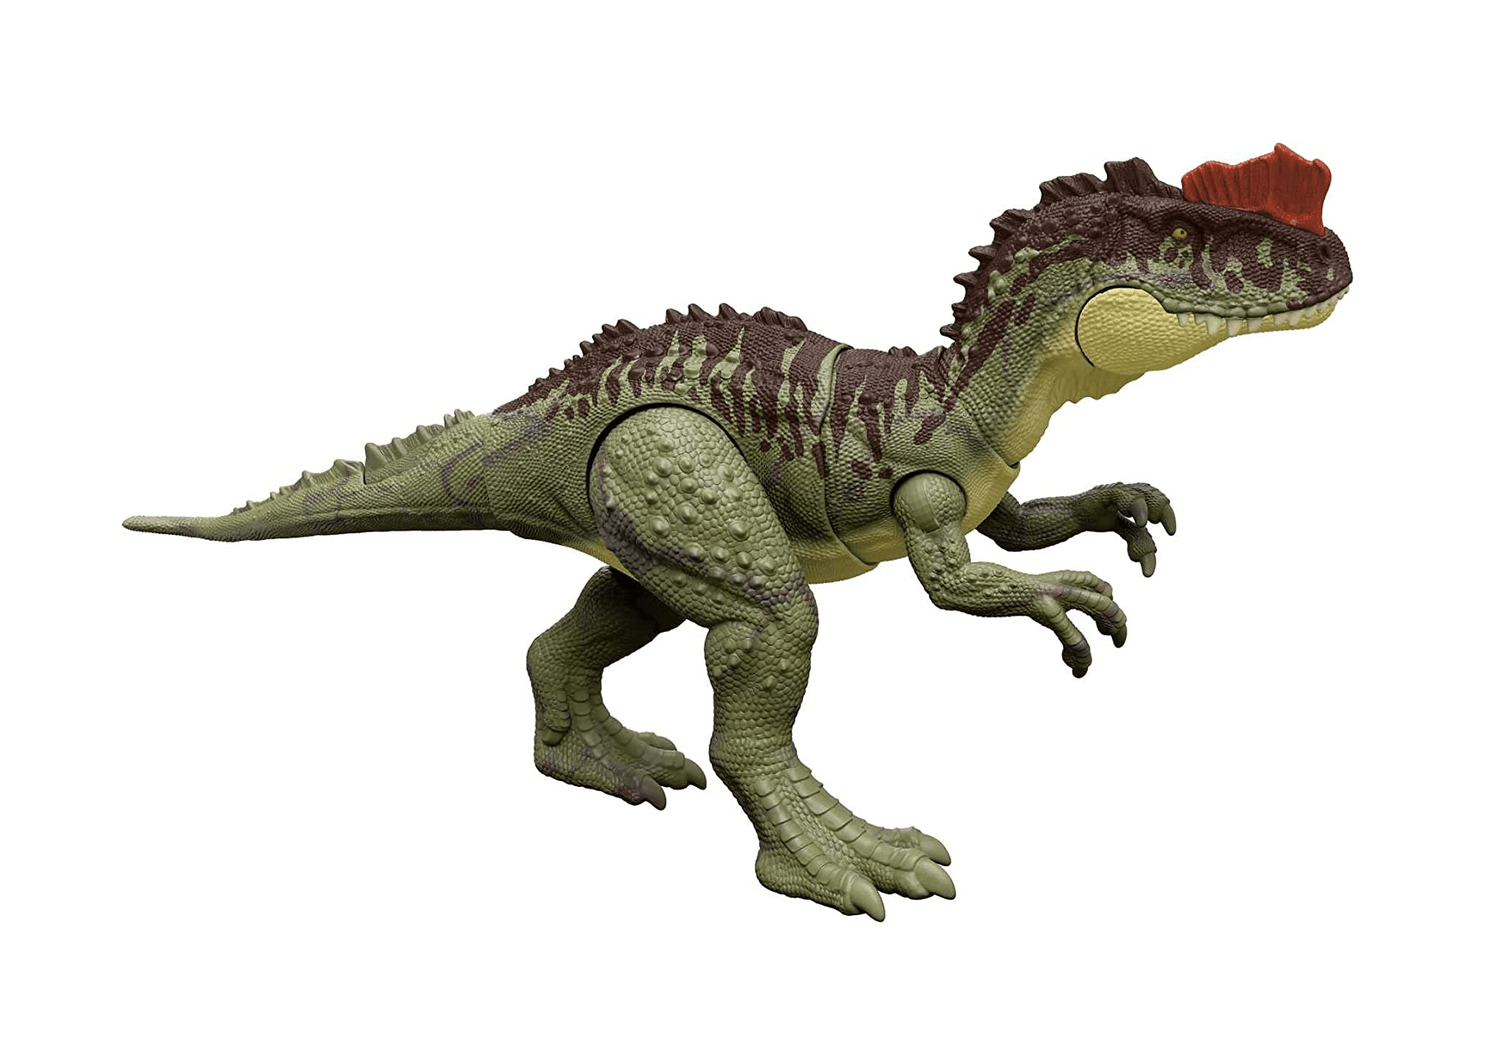 Realidade virtual do app do Google leva dinossauros de Jurassic